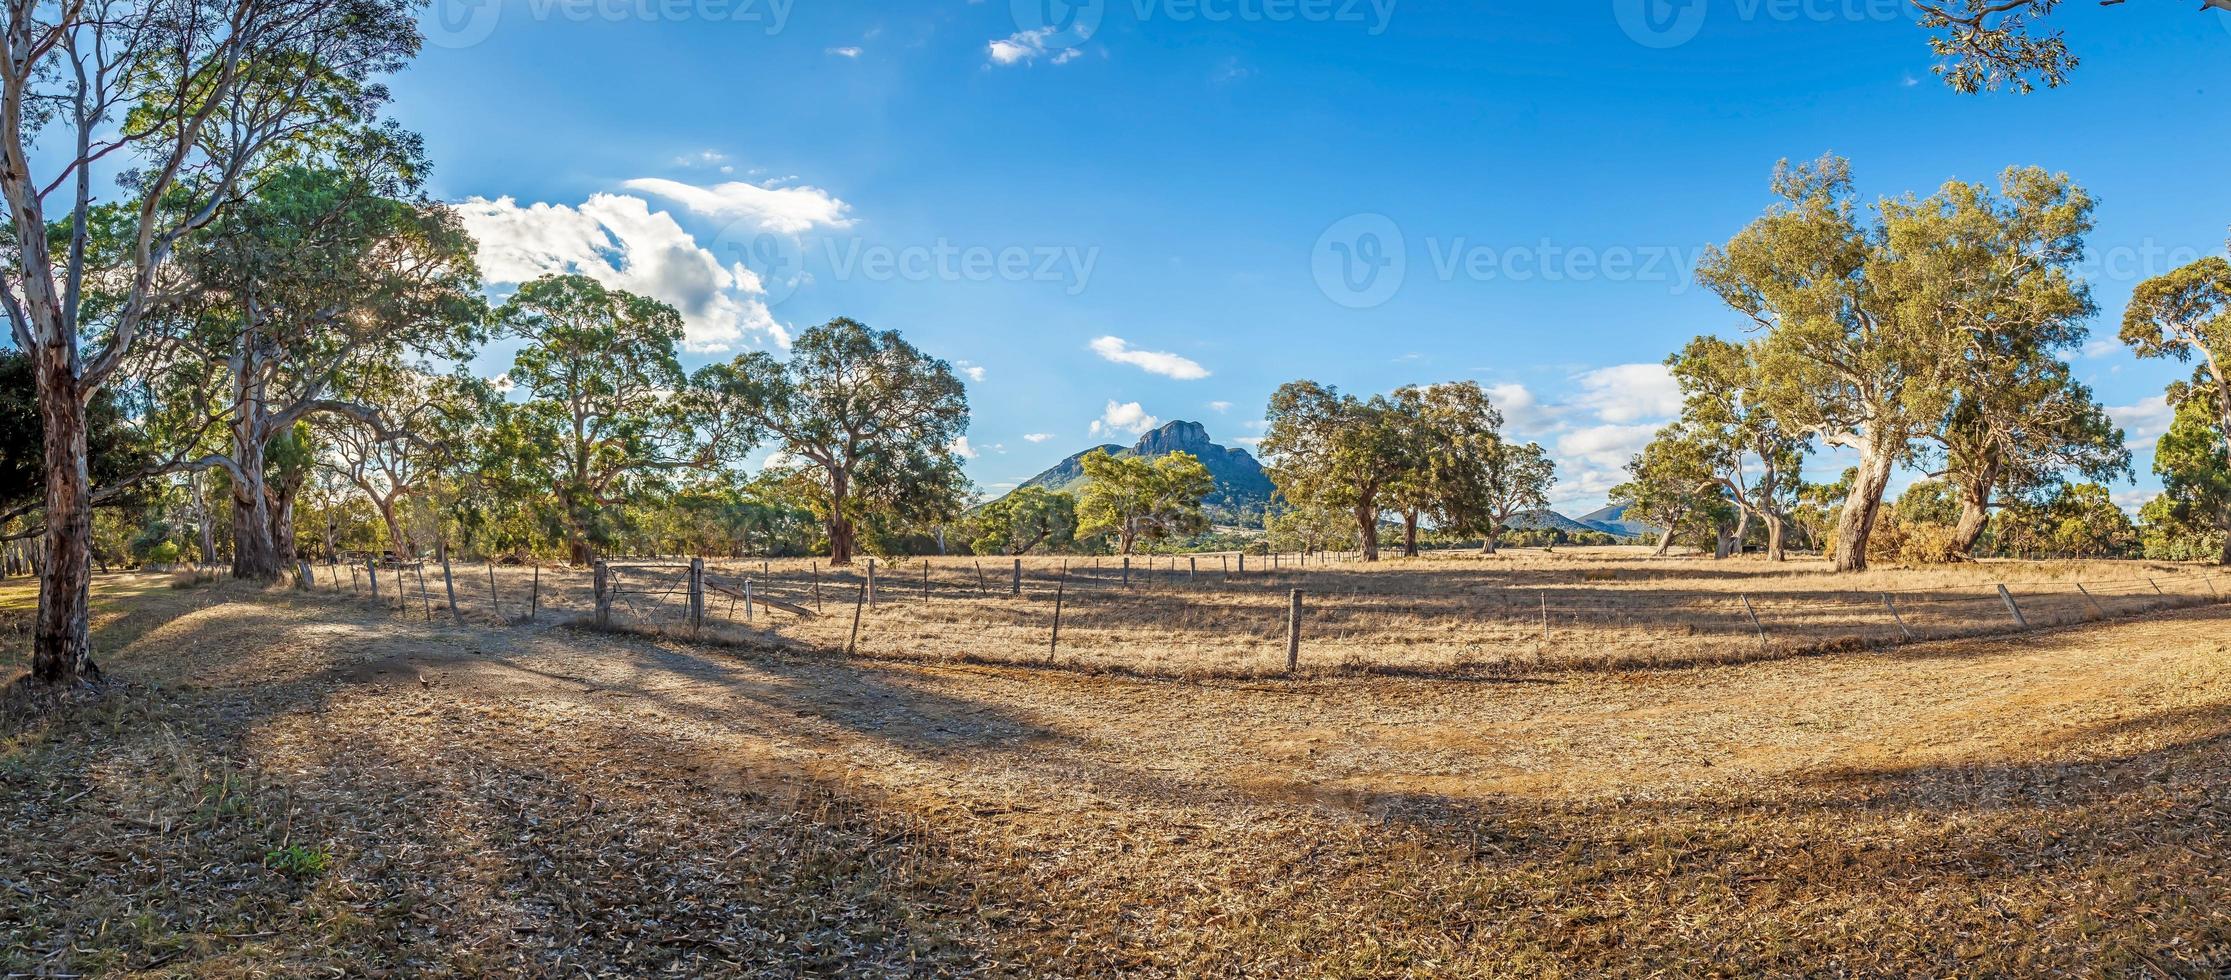 foto sobre paisagem típica da austrália com eucaliptos